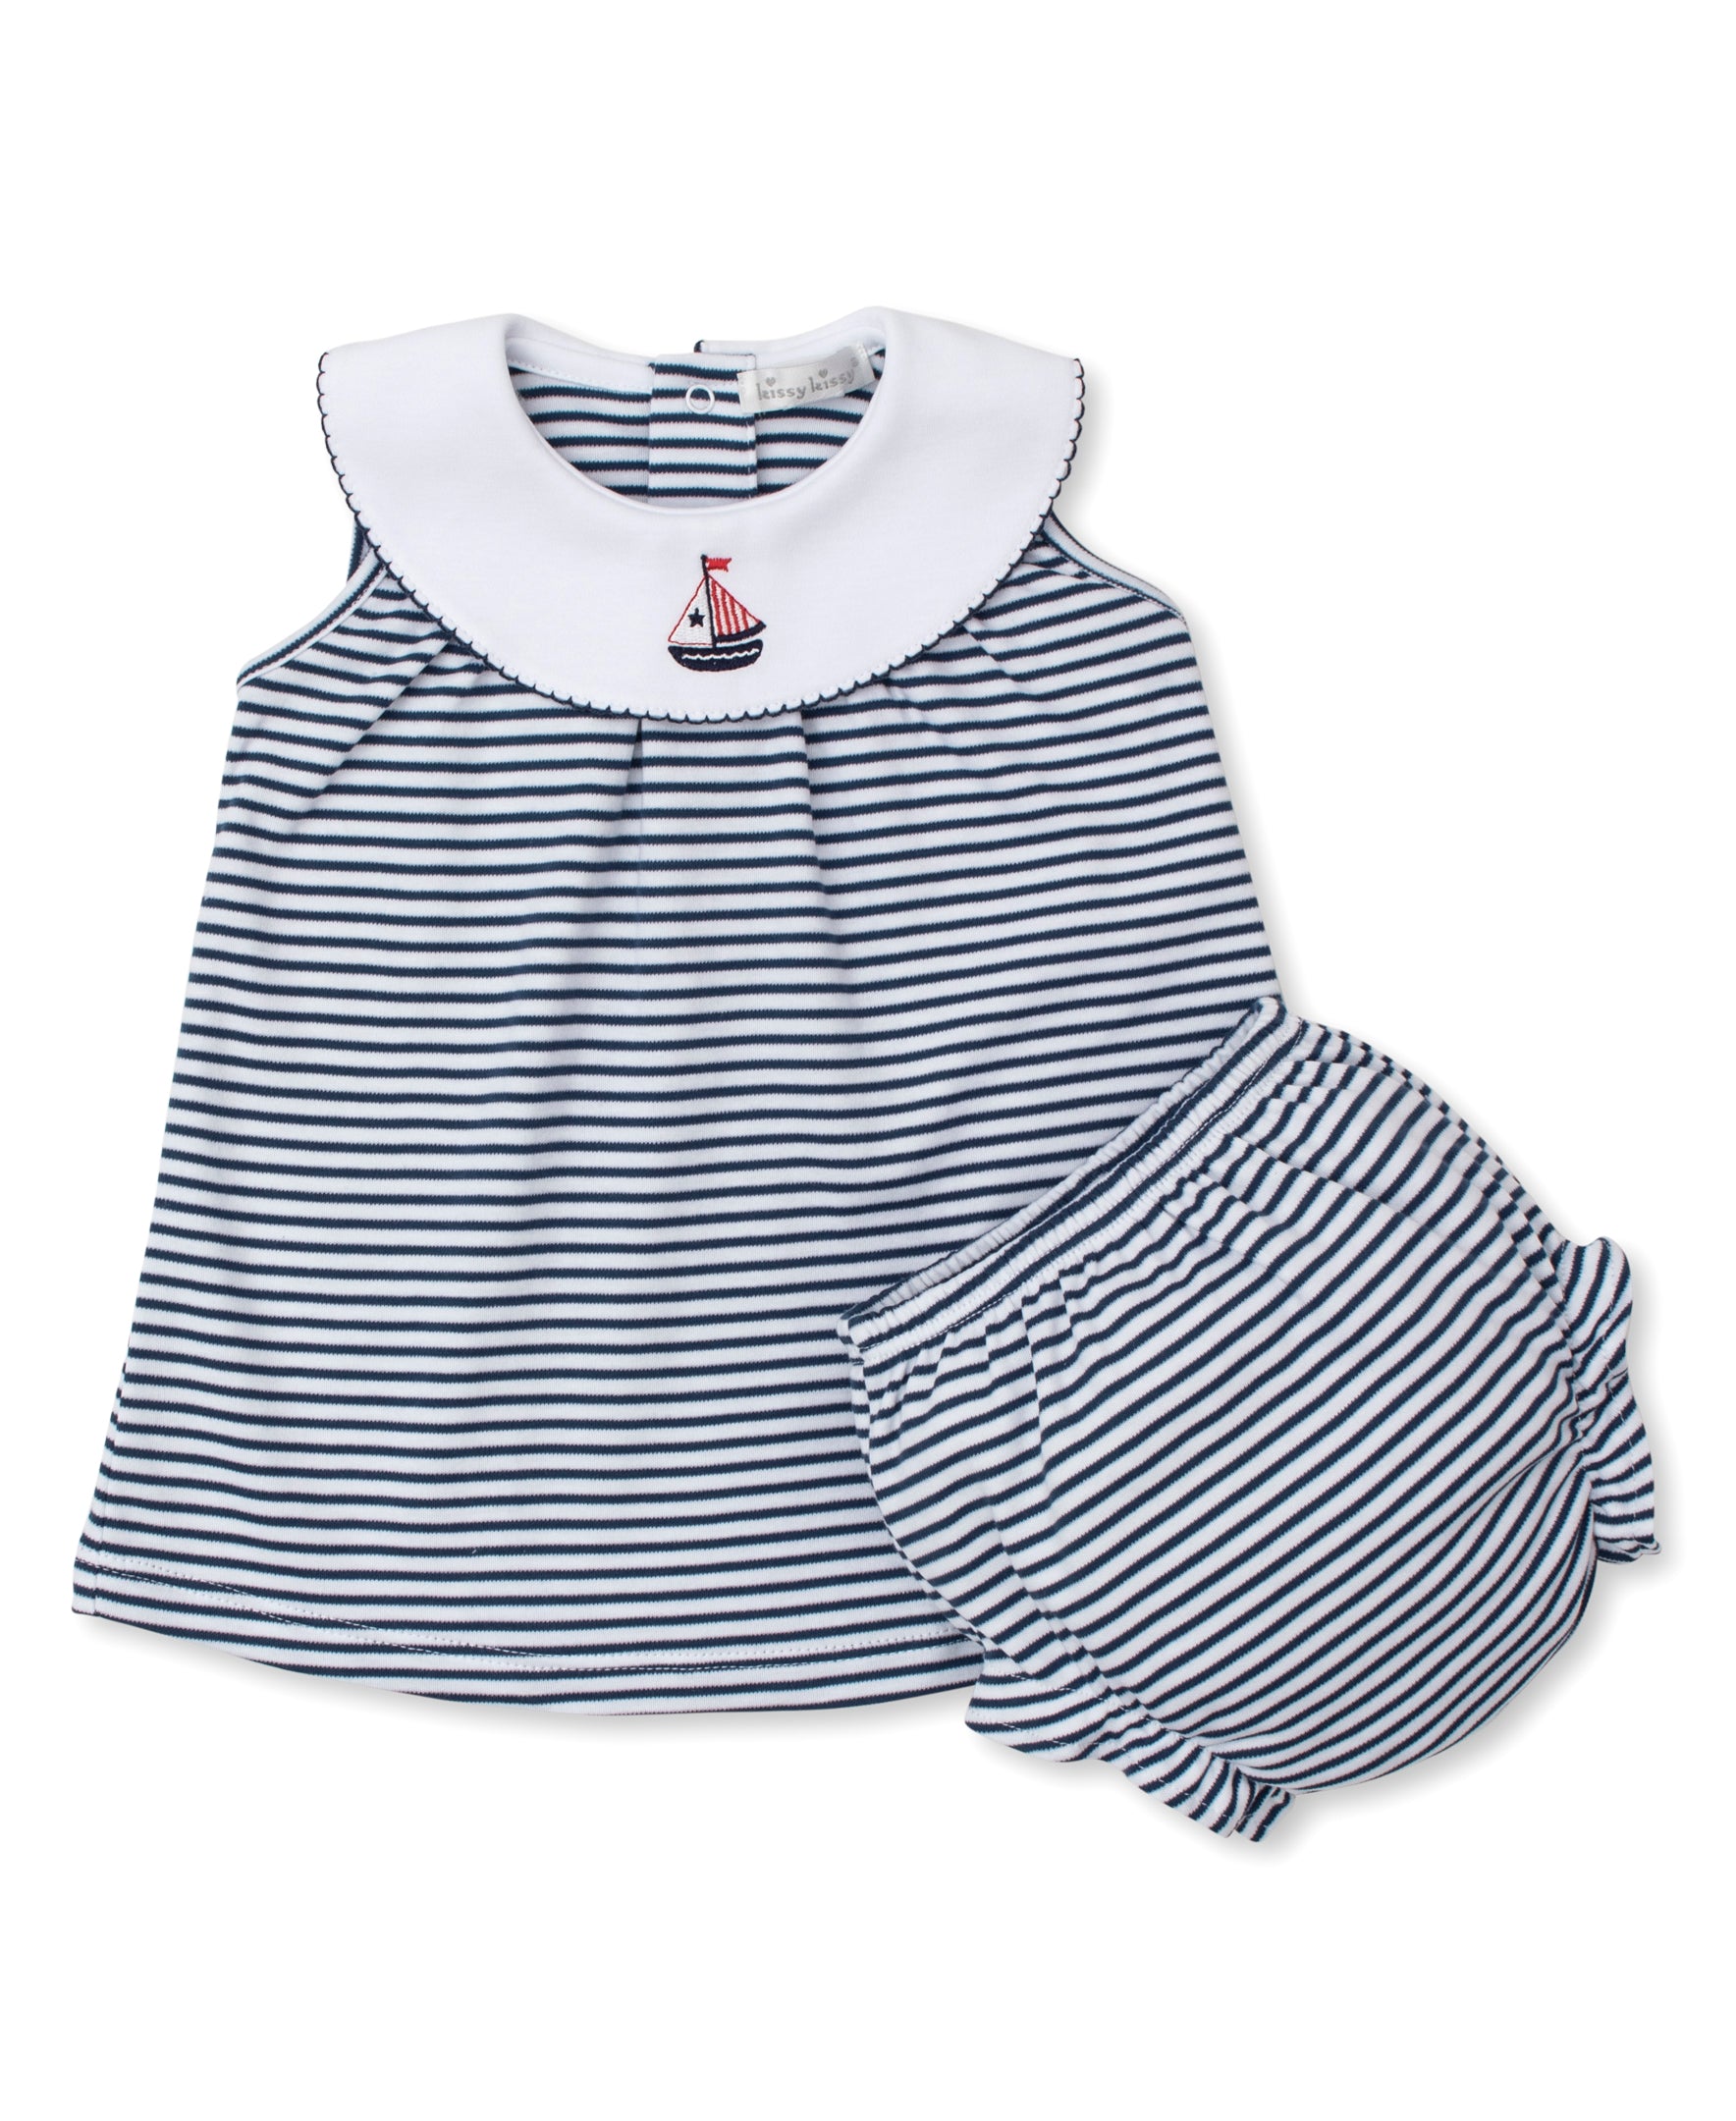 Summer Regatta Stripe Dress Set - Kissy Kissy